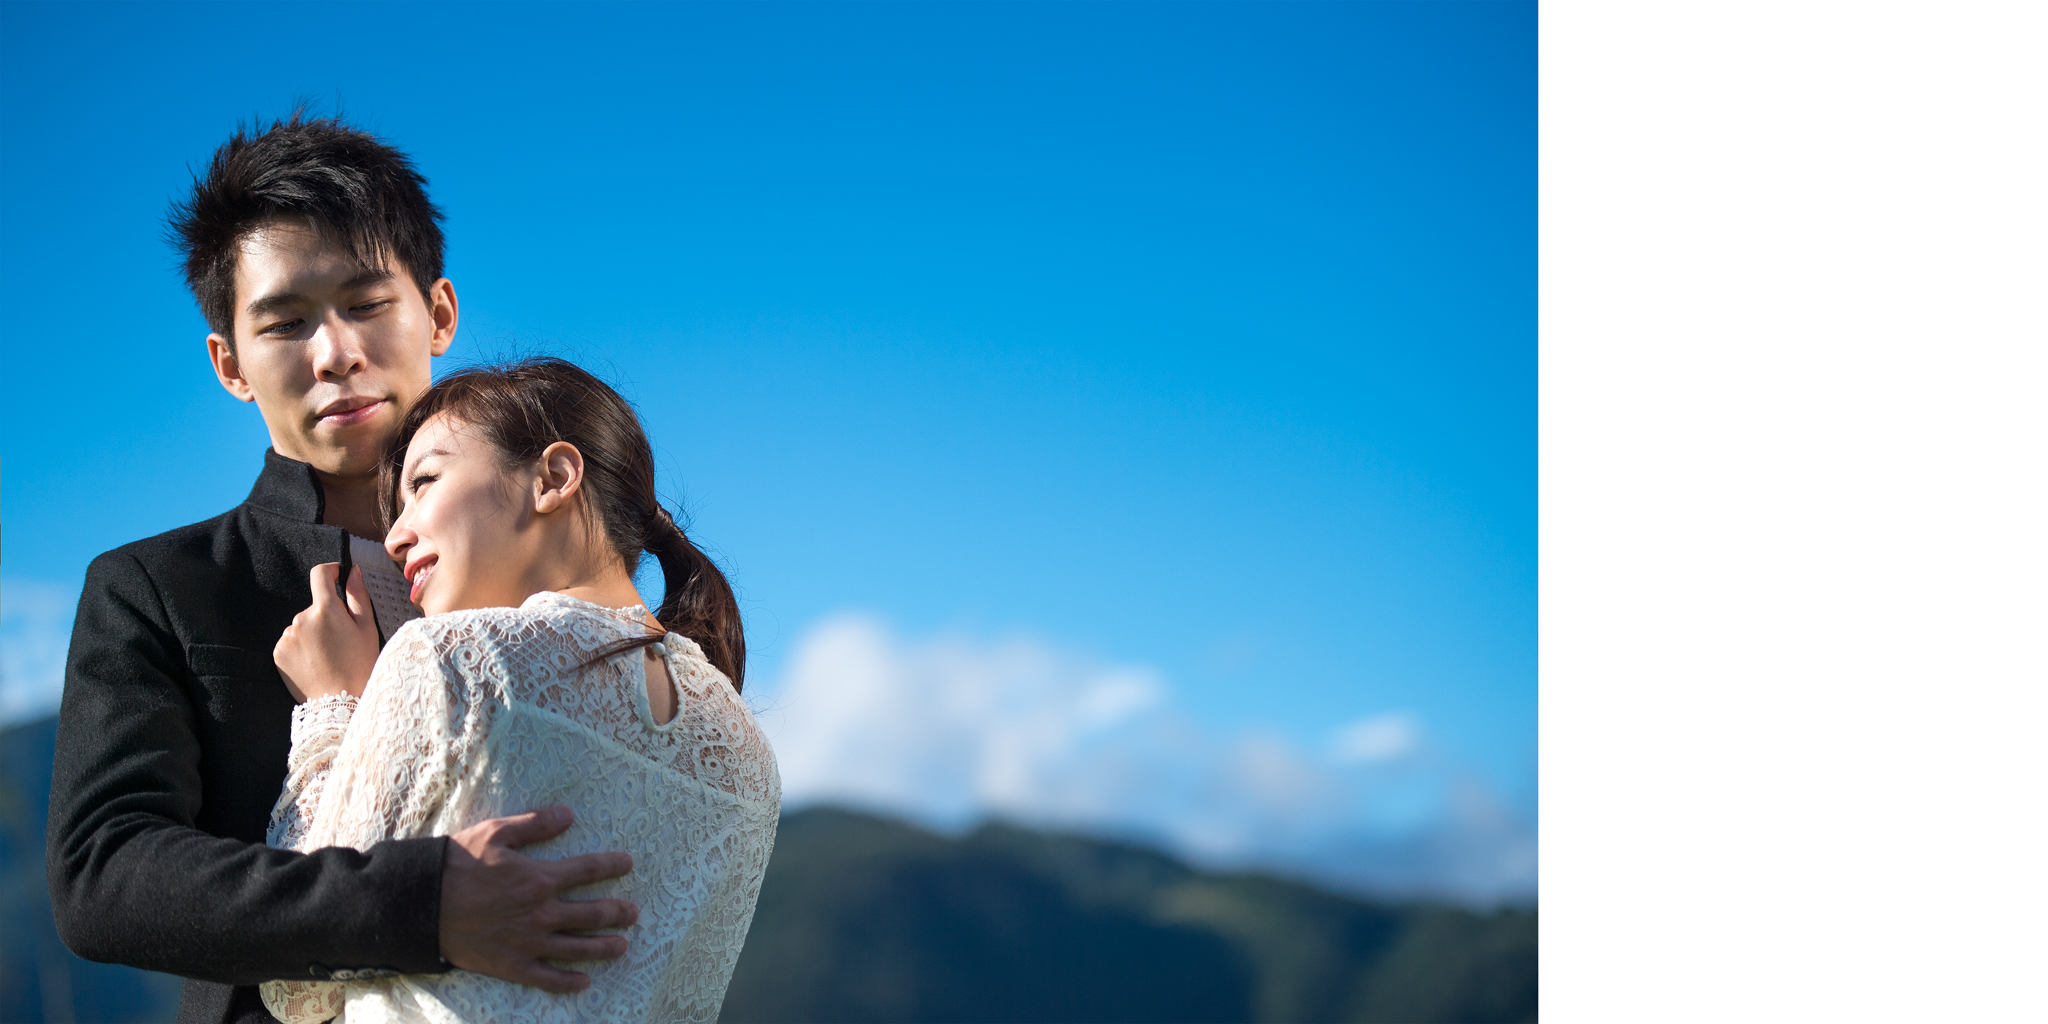 獨立婚紗影像 Tina & 張裕 | 獨立攝影師 Anderson Chien | 獨立婚紗 | 自助婚紗 | 婚禮紀實 | 平面攝影 | 婚禮紀錄 | 海外婚紗 | 自主婚紗